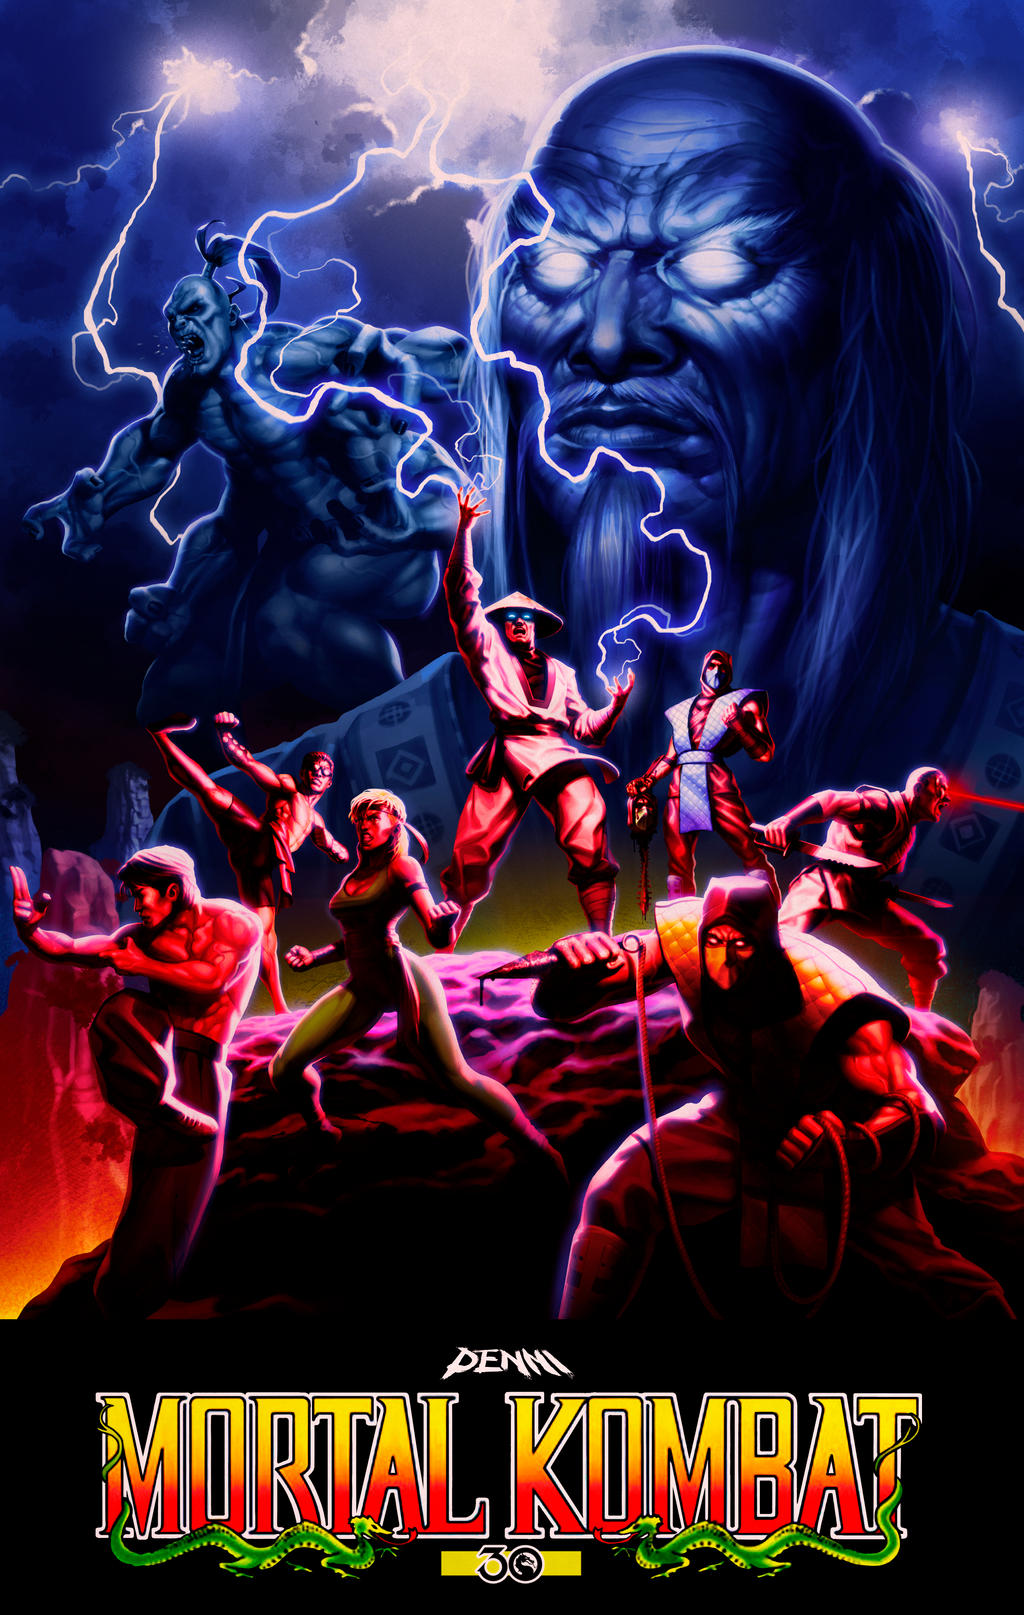 ArtStation - Mortal Kombat 2 30 anniversary Poster